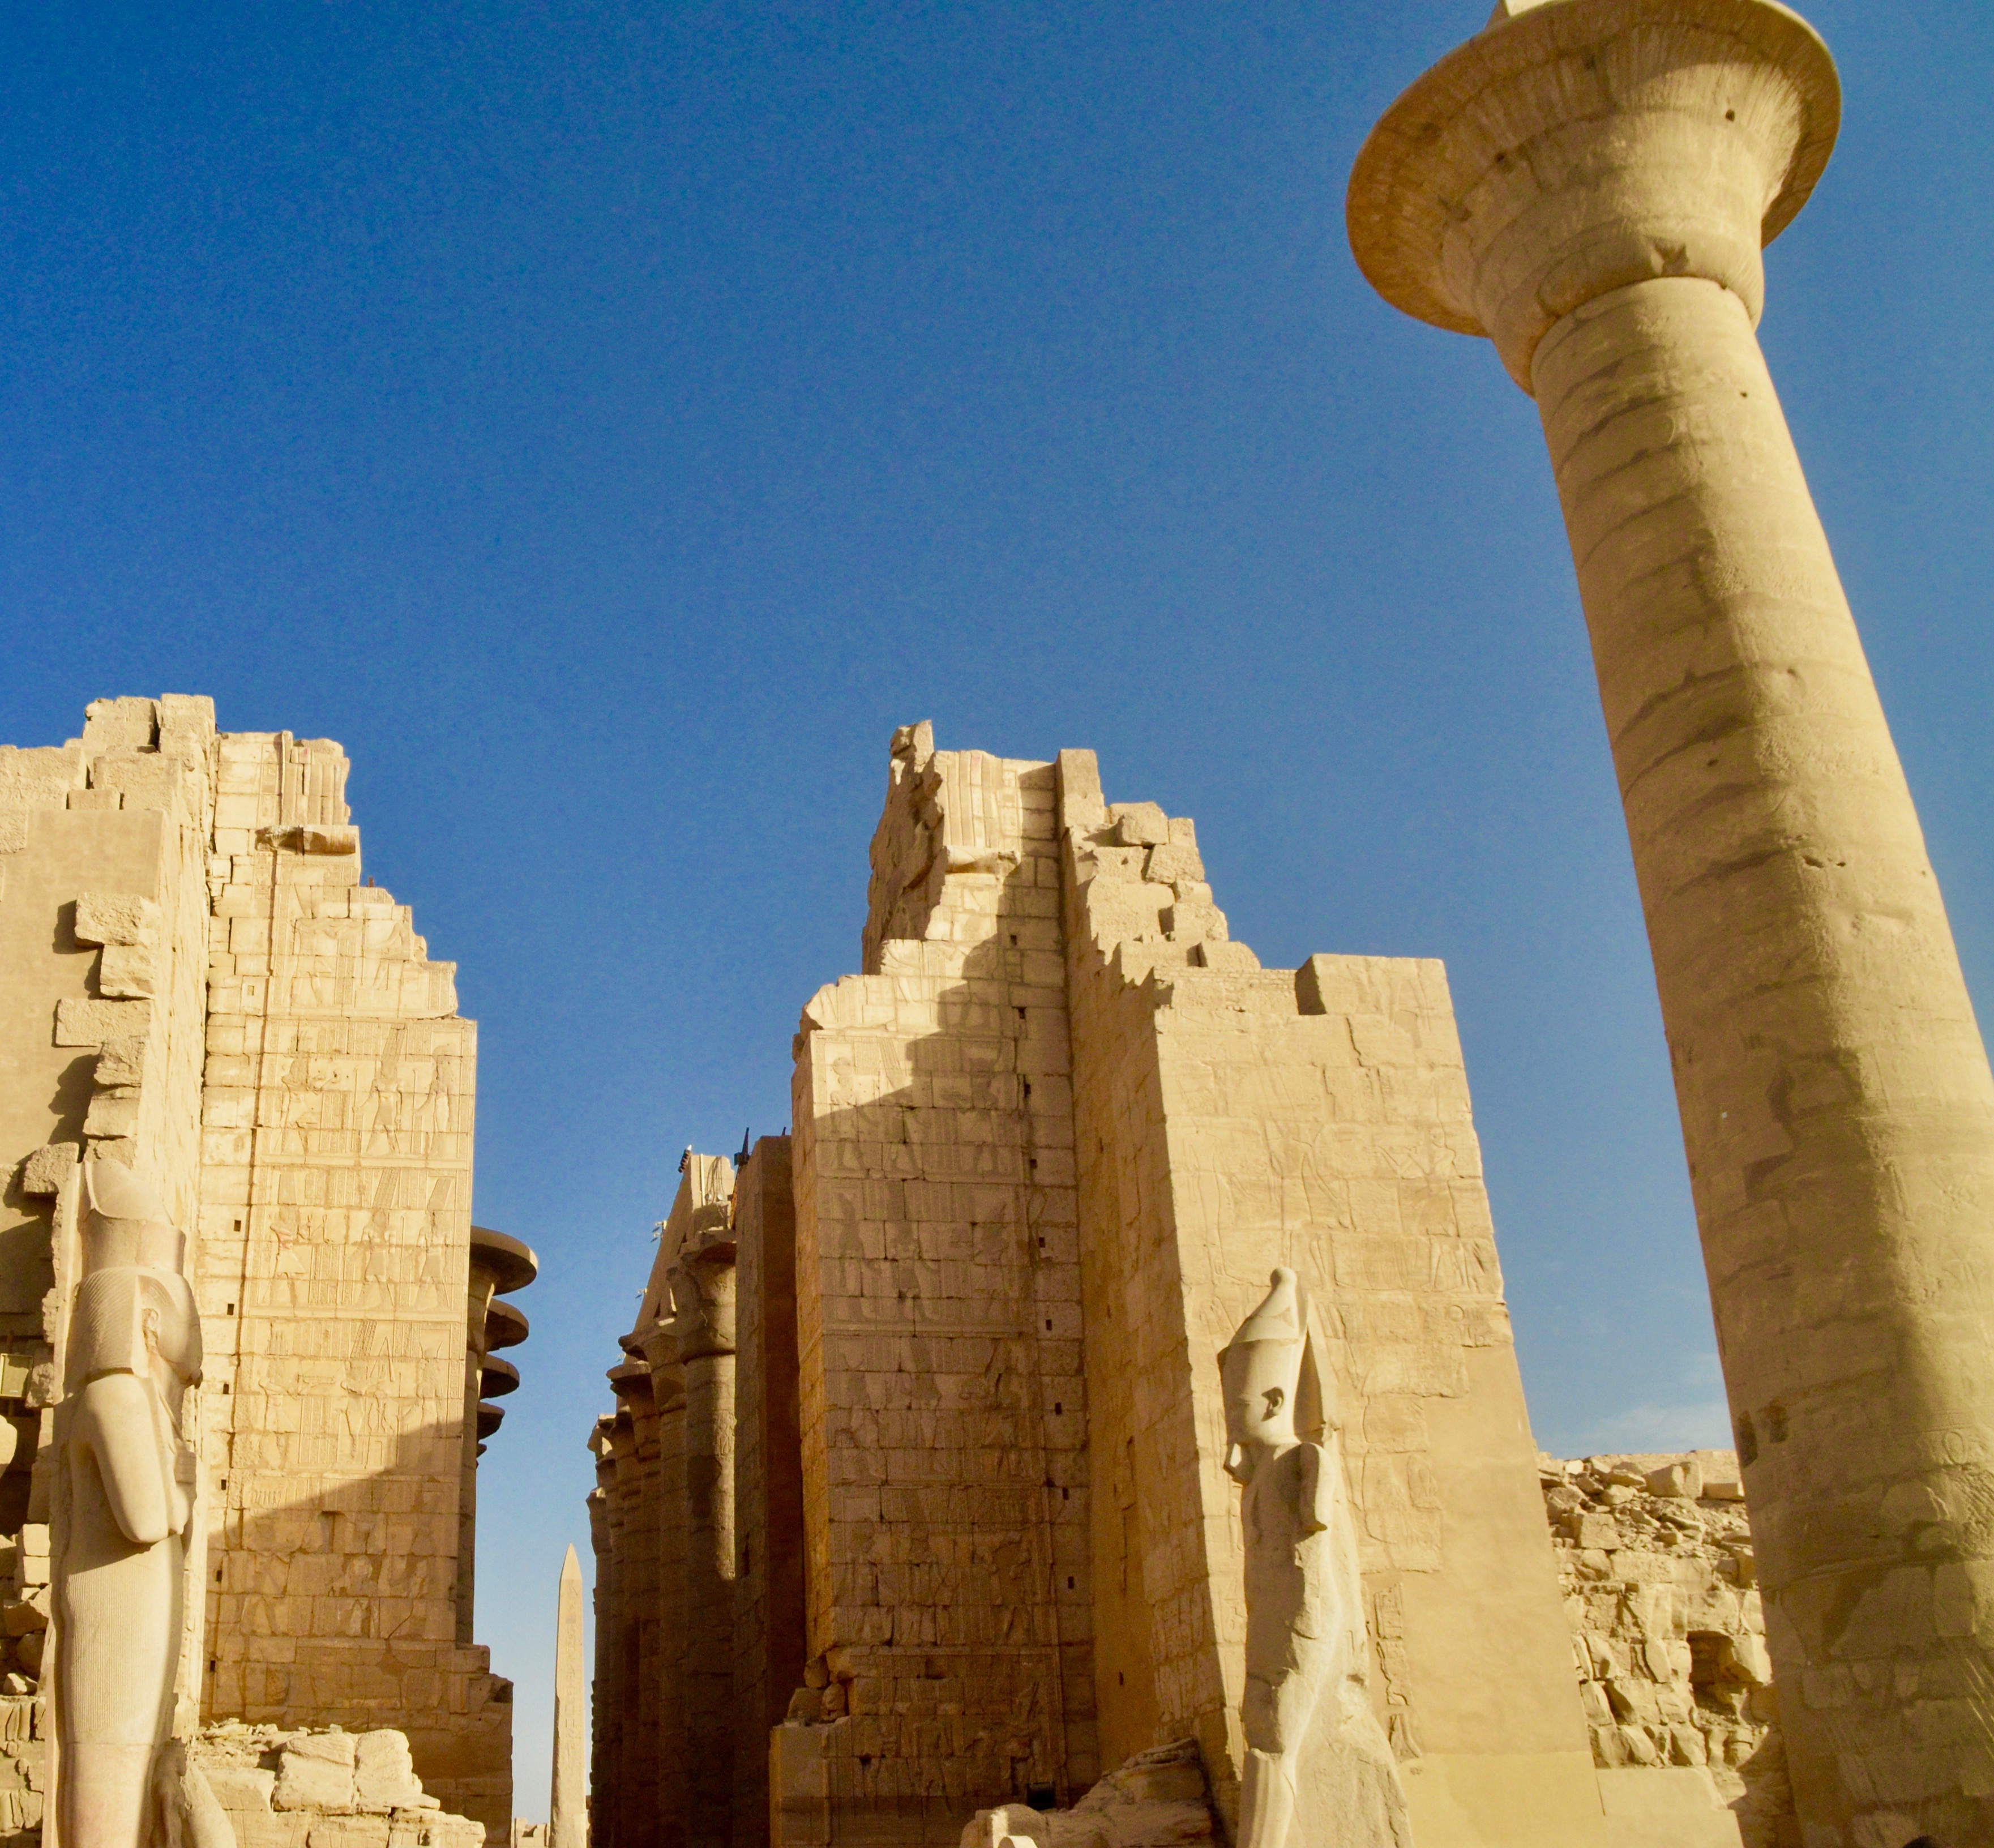 Inside Karnak